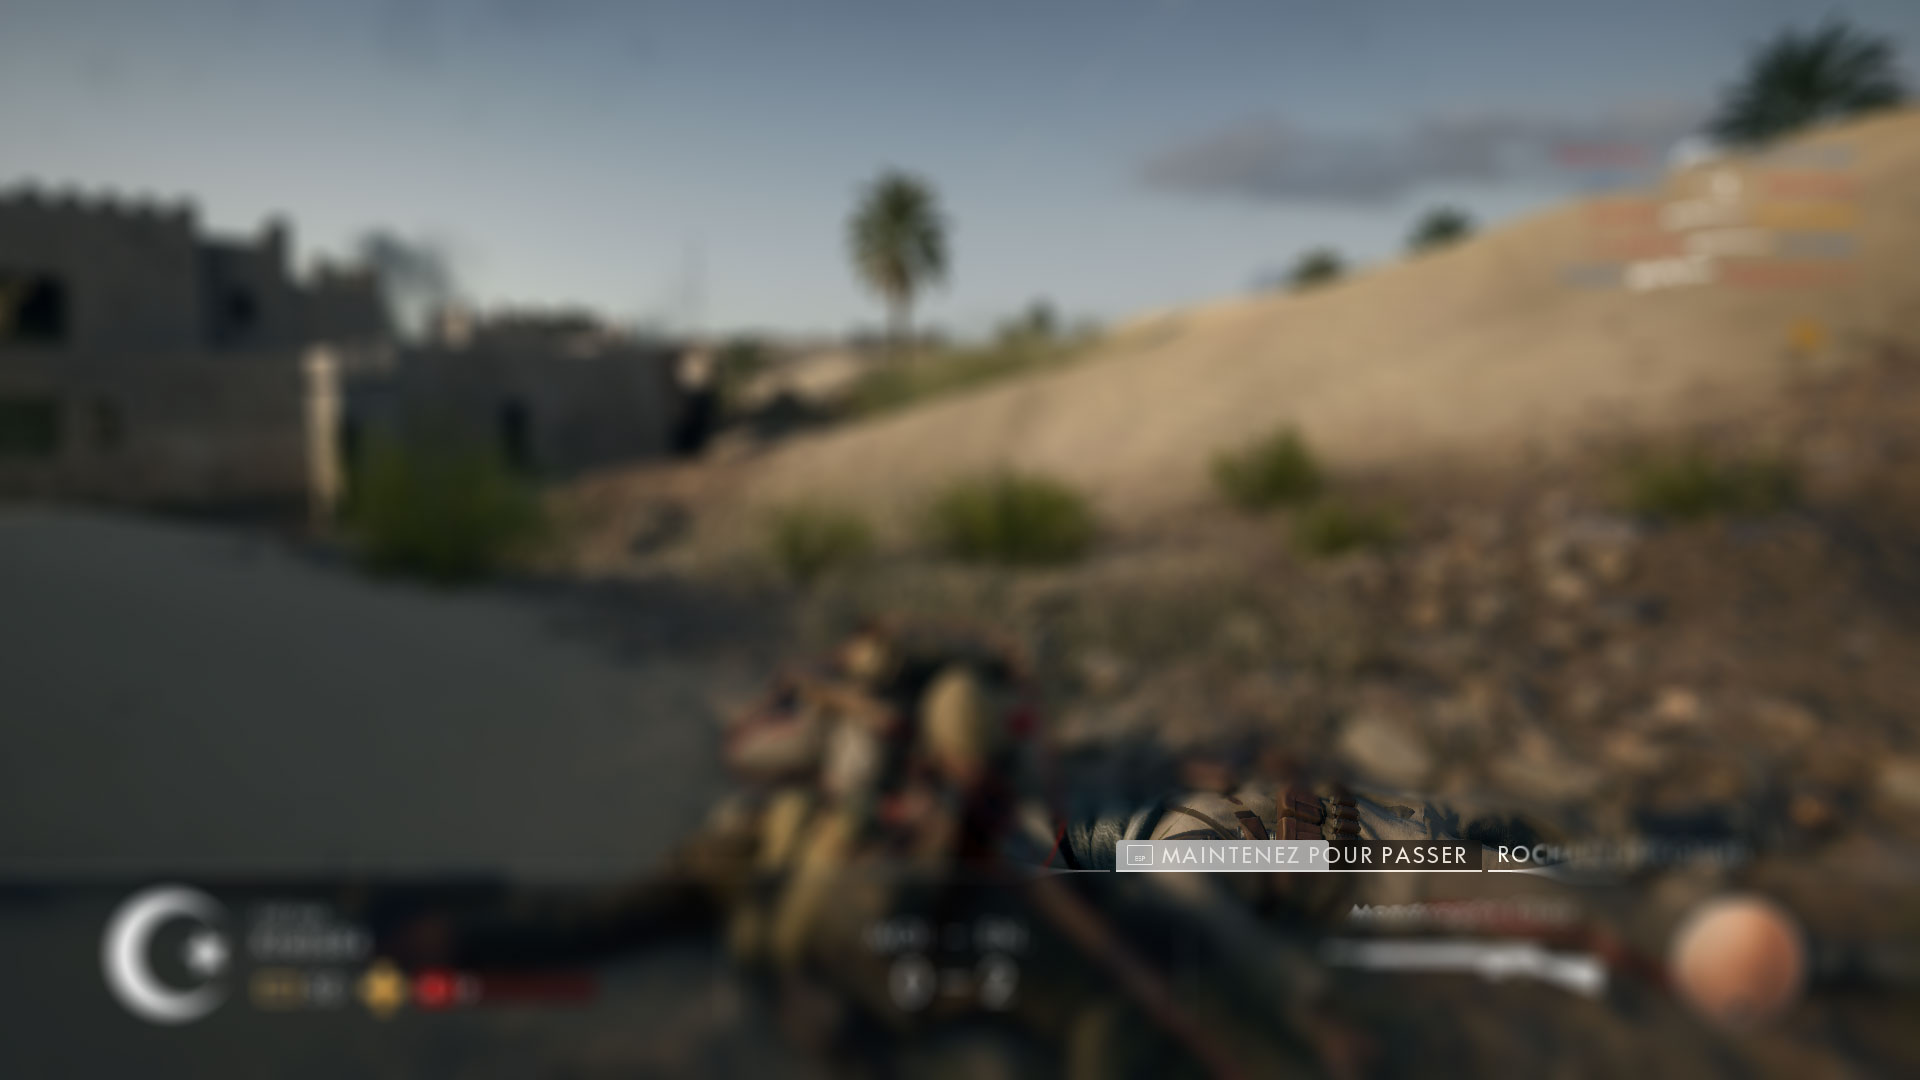 Capture d'écran de l'interface lorsqu'on est mort dans Battlefield 1